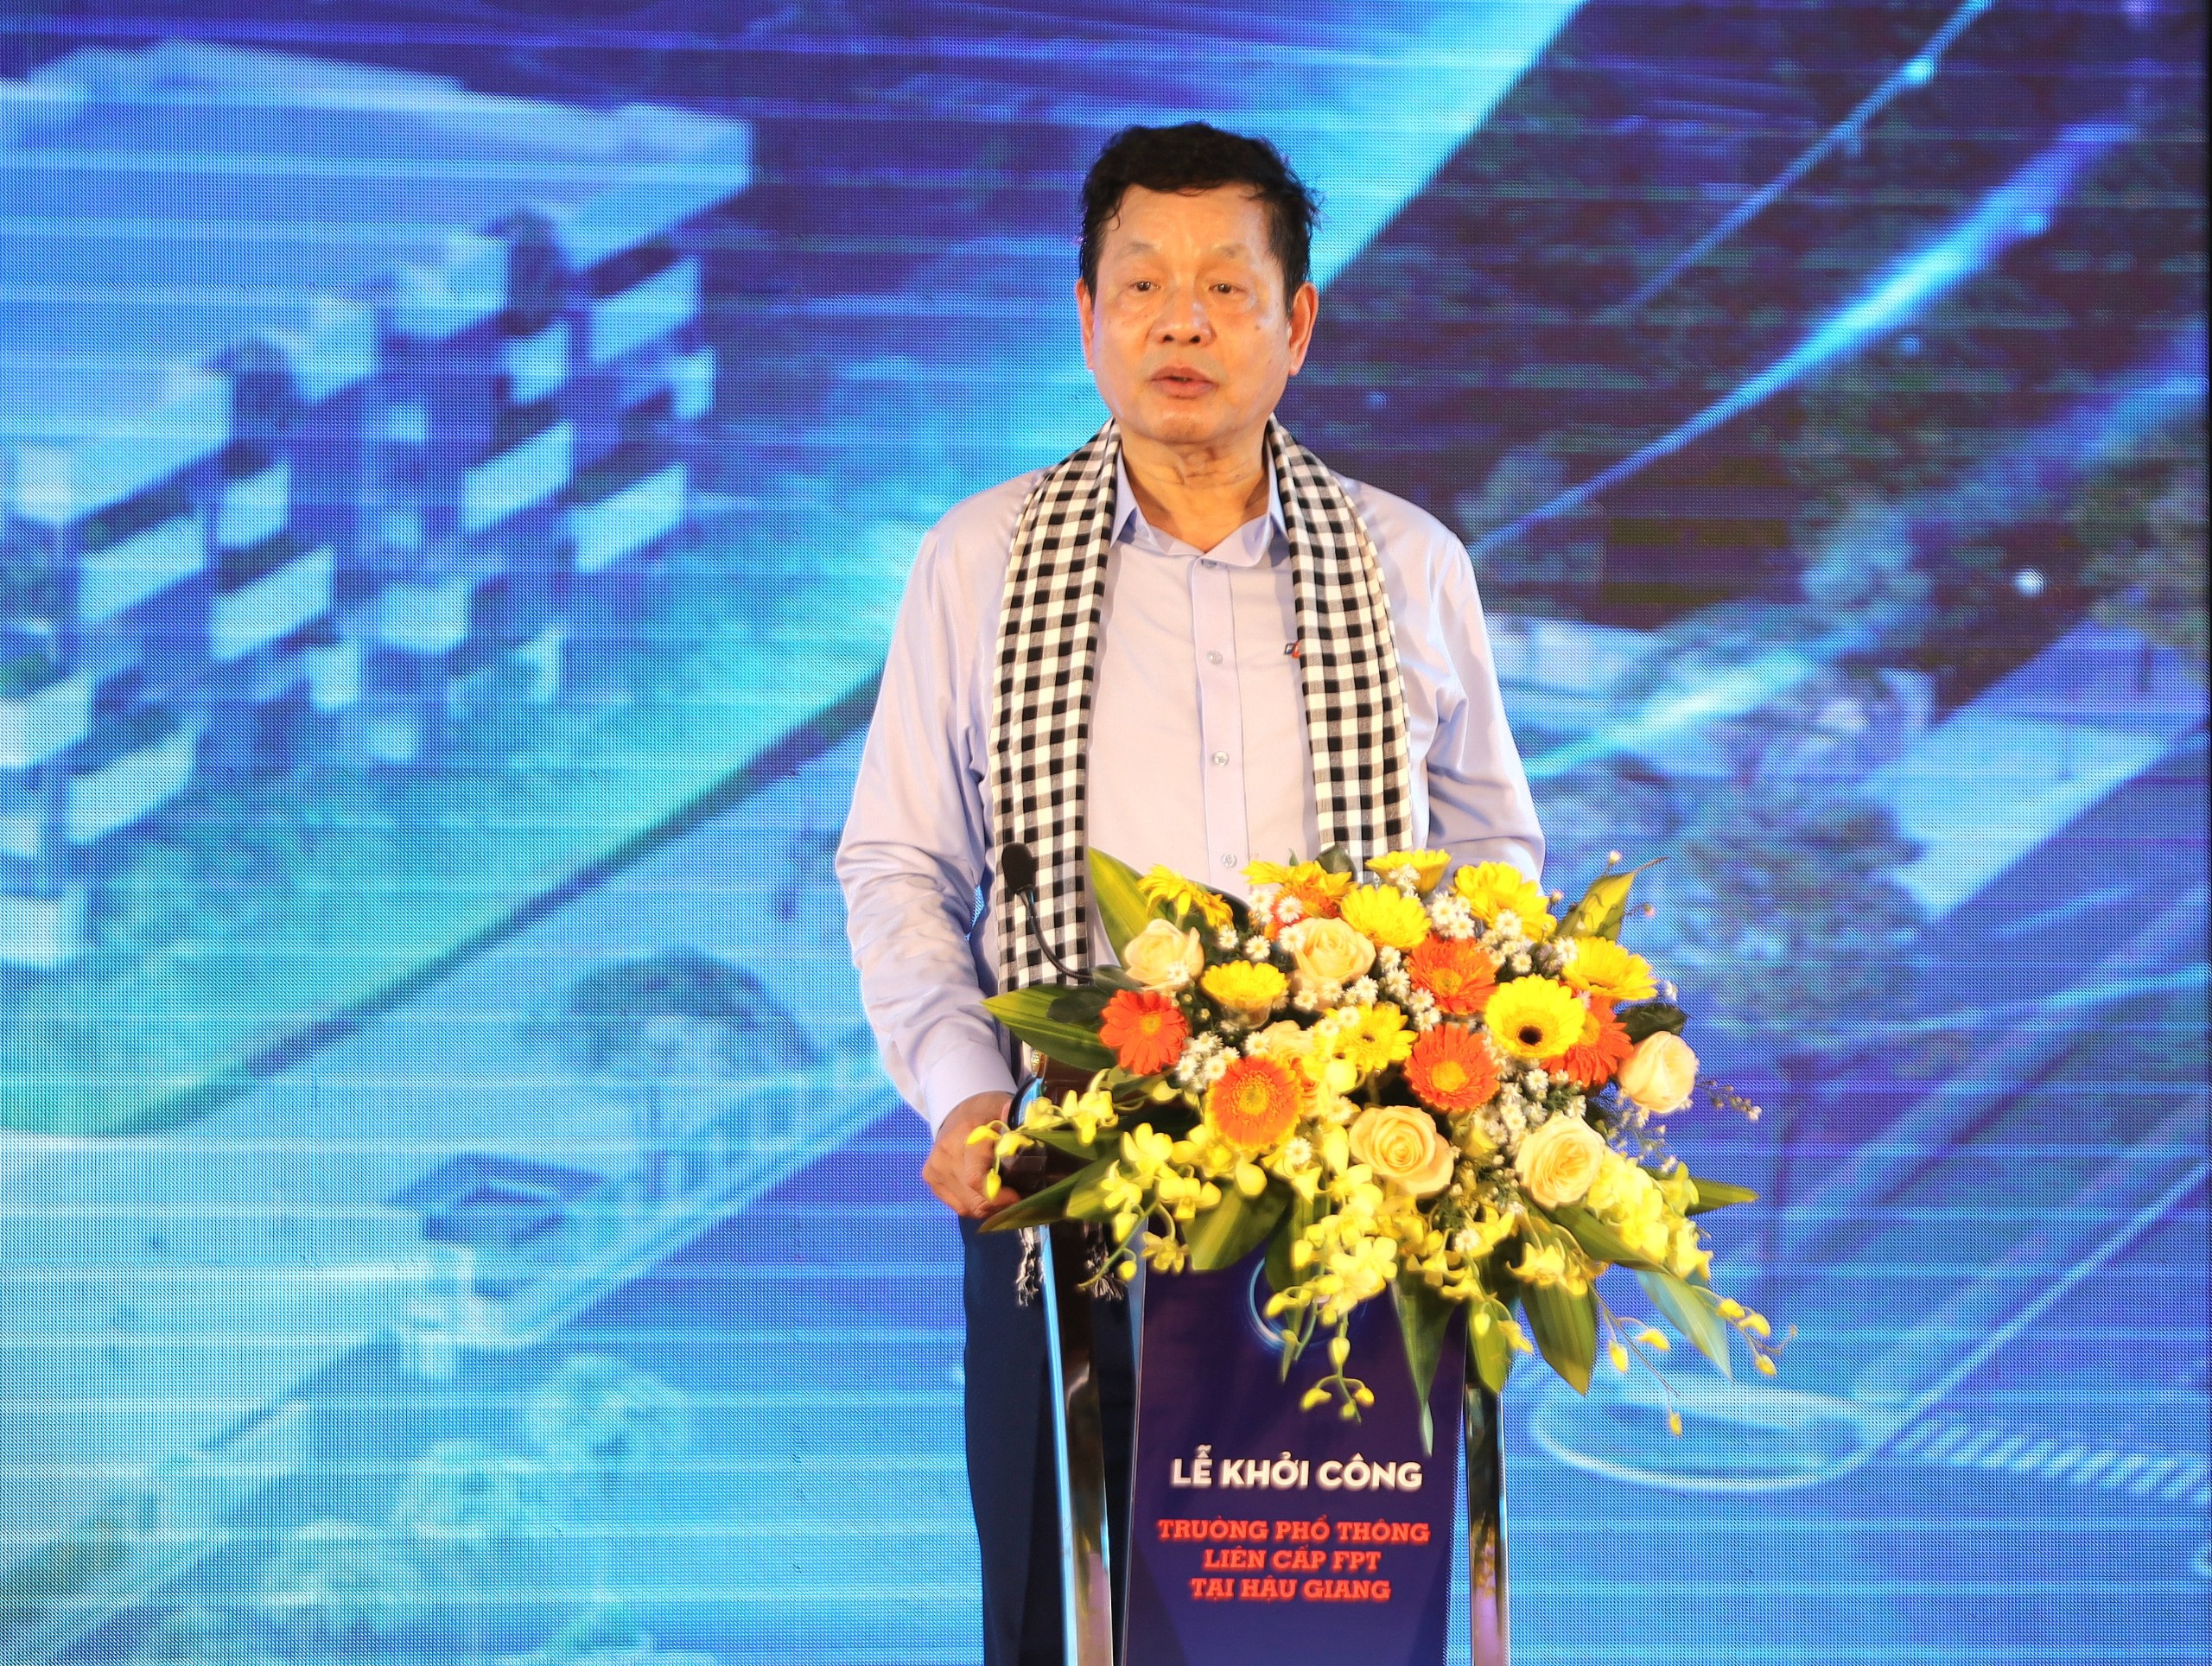 Ông Trương Gia Bình - Chủ tịch HĐQT Tập đoàn FPT phát biểu tại buổi lễ.